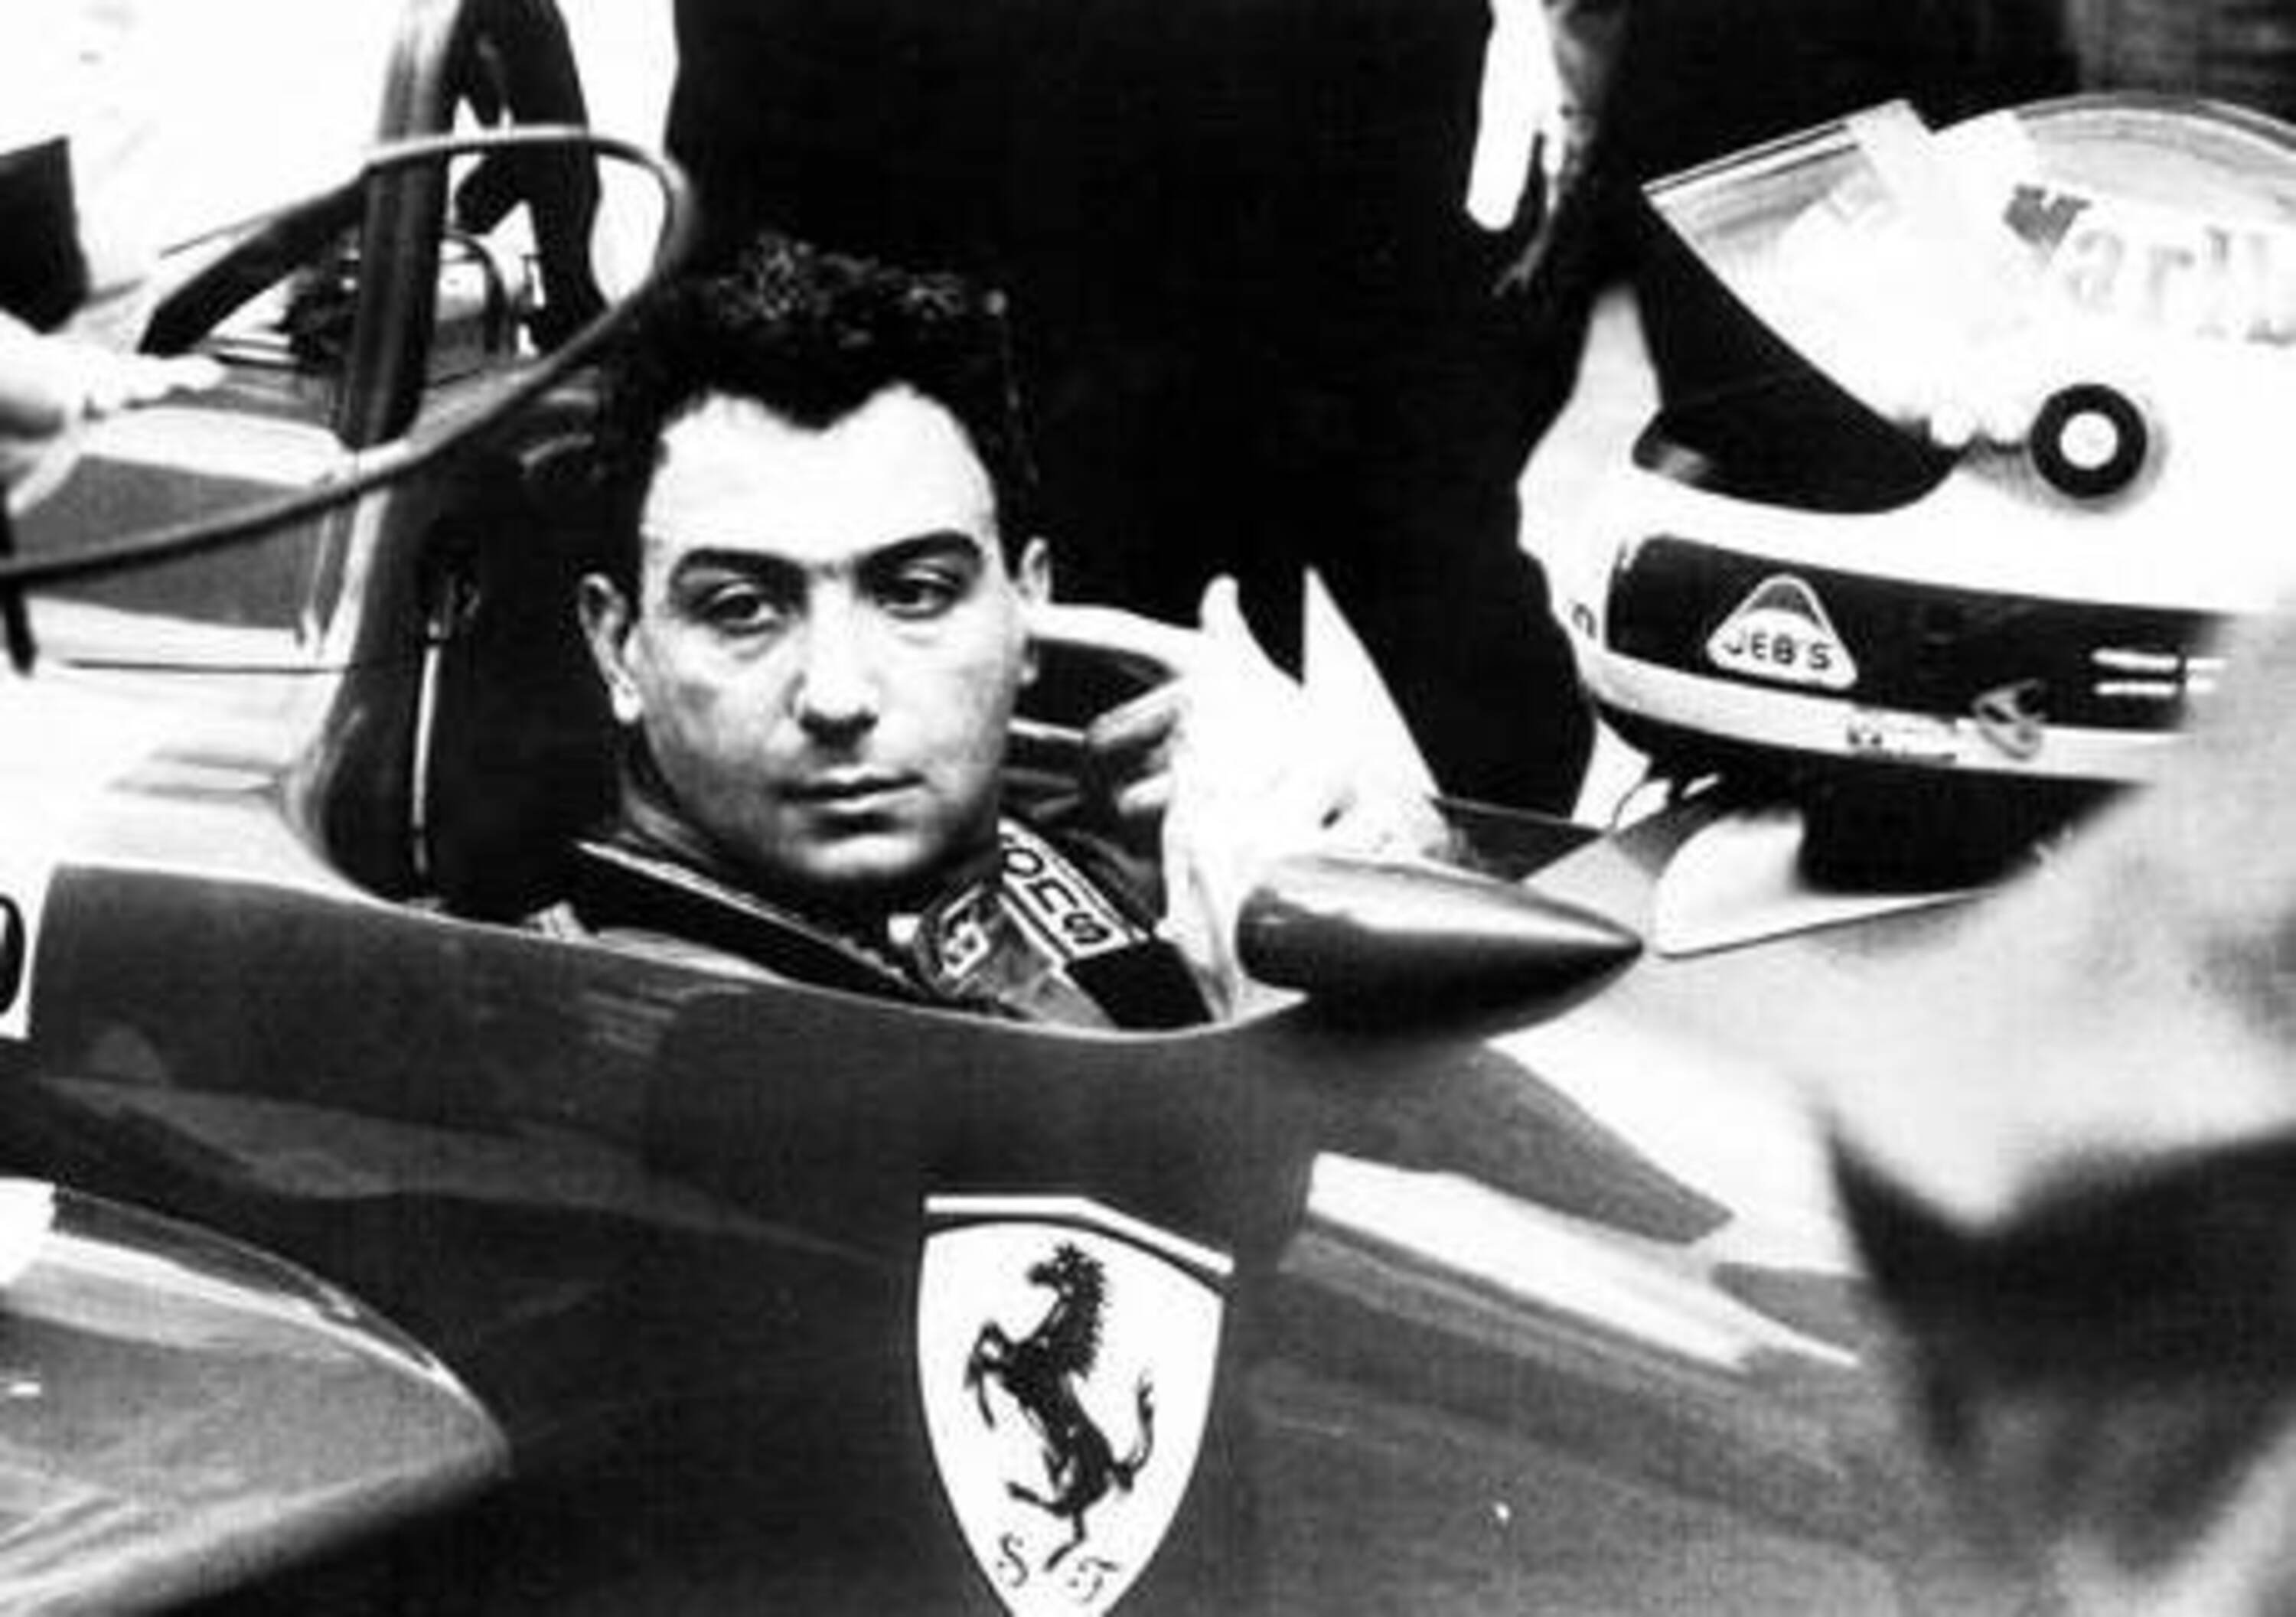 F1, oggi Alboreto avrebbe compiuto 60 anni